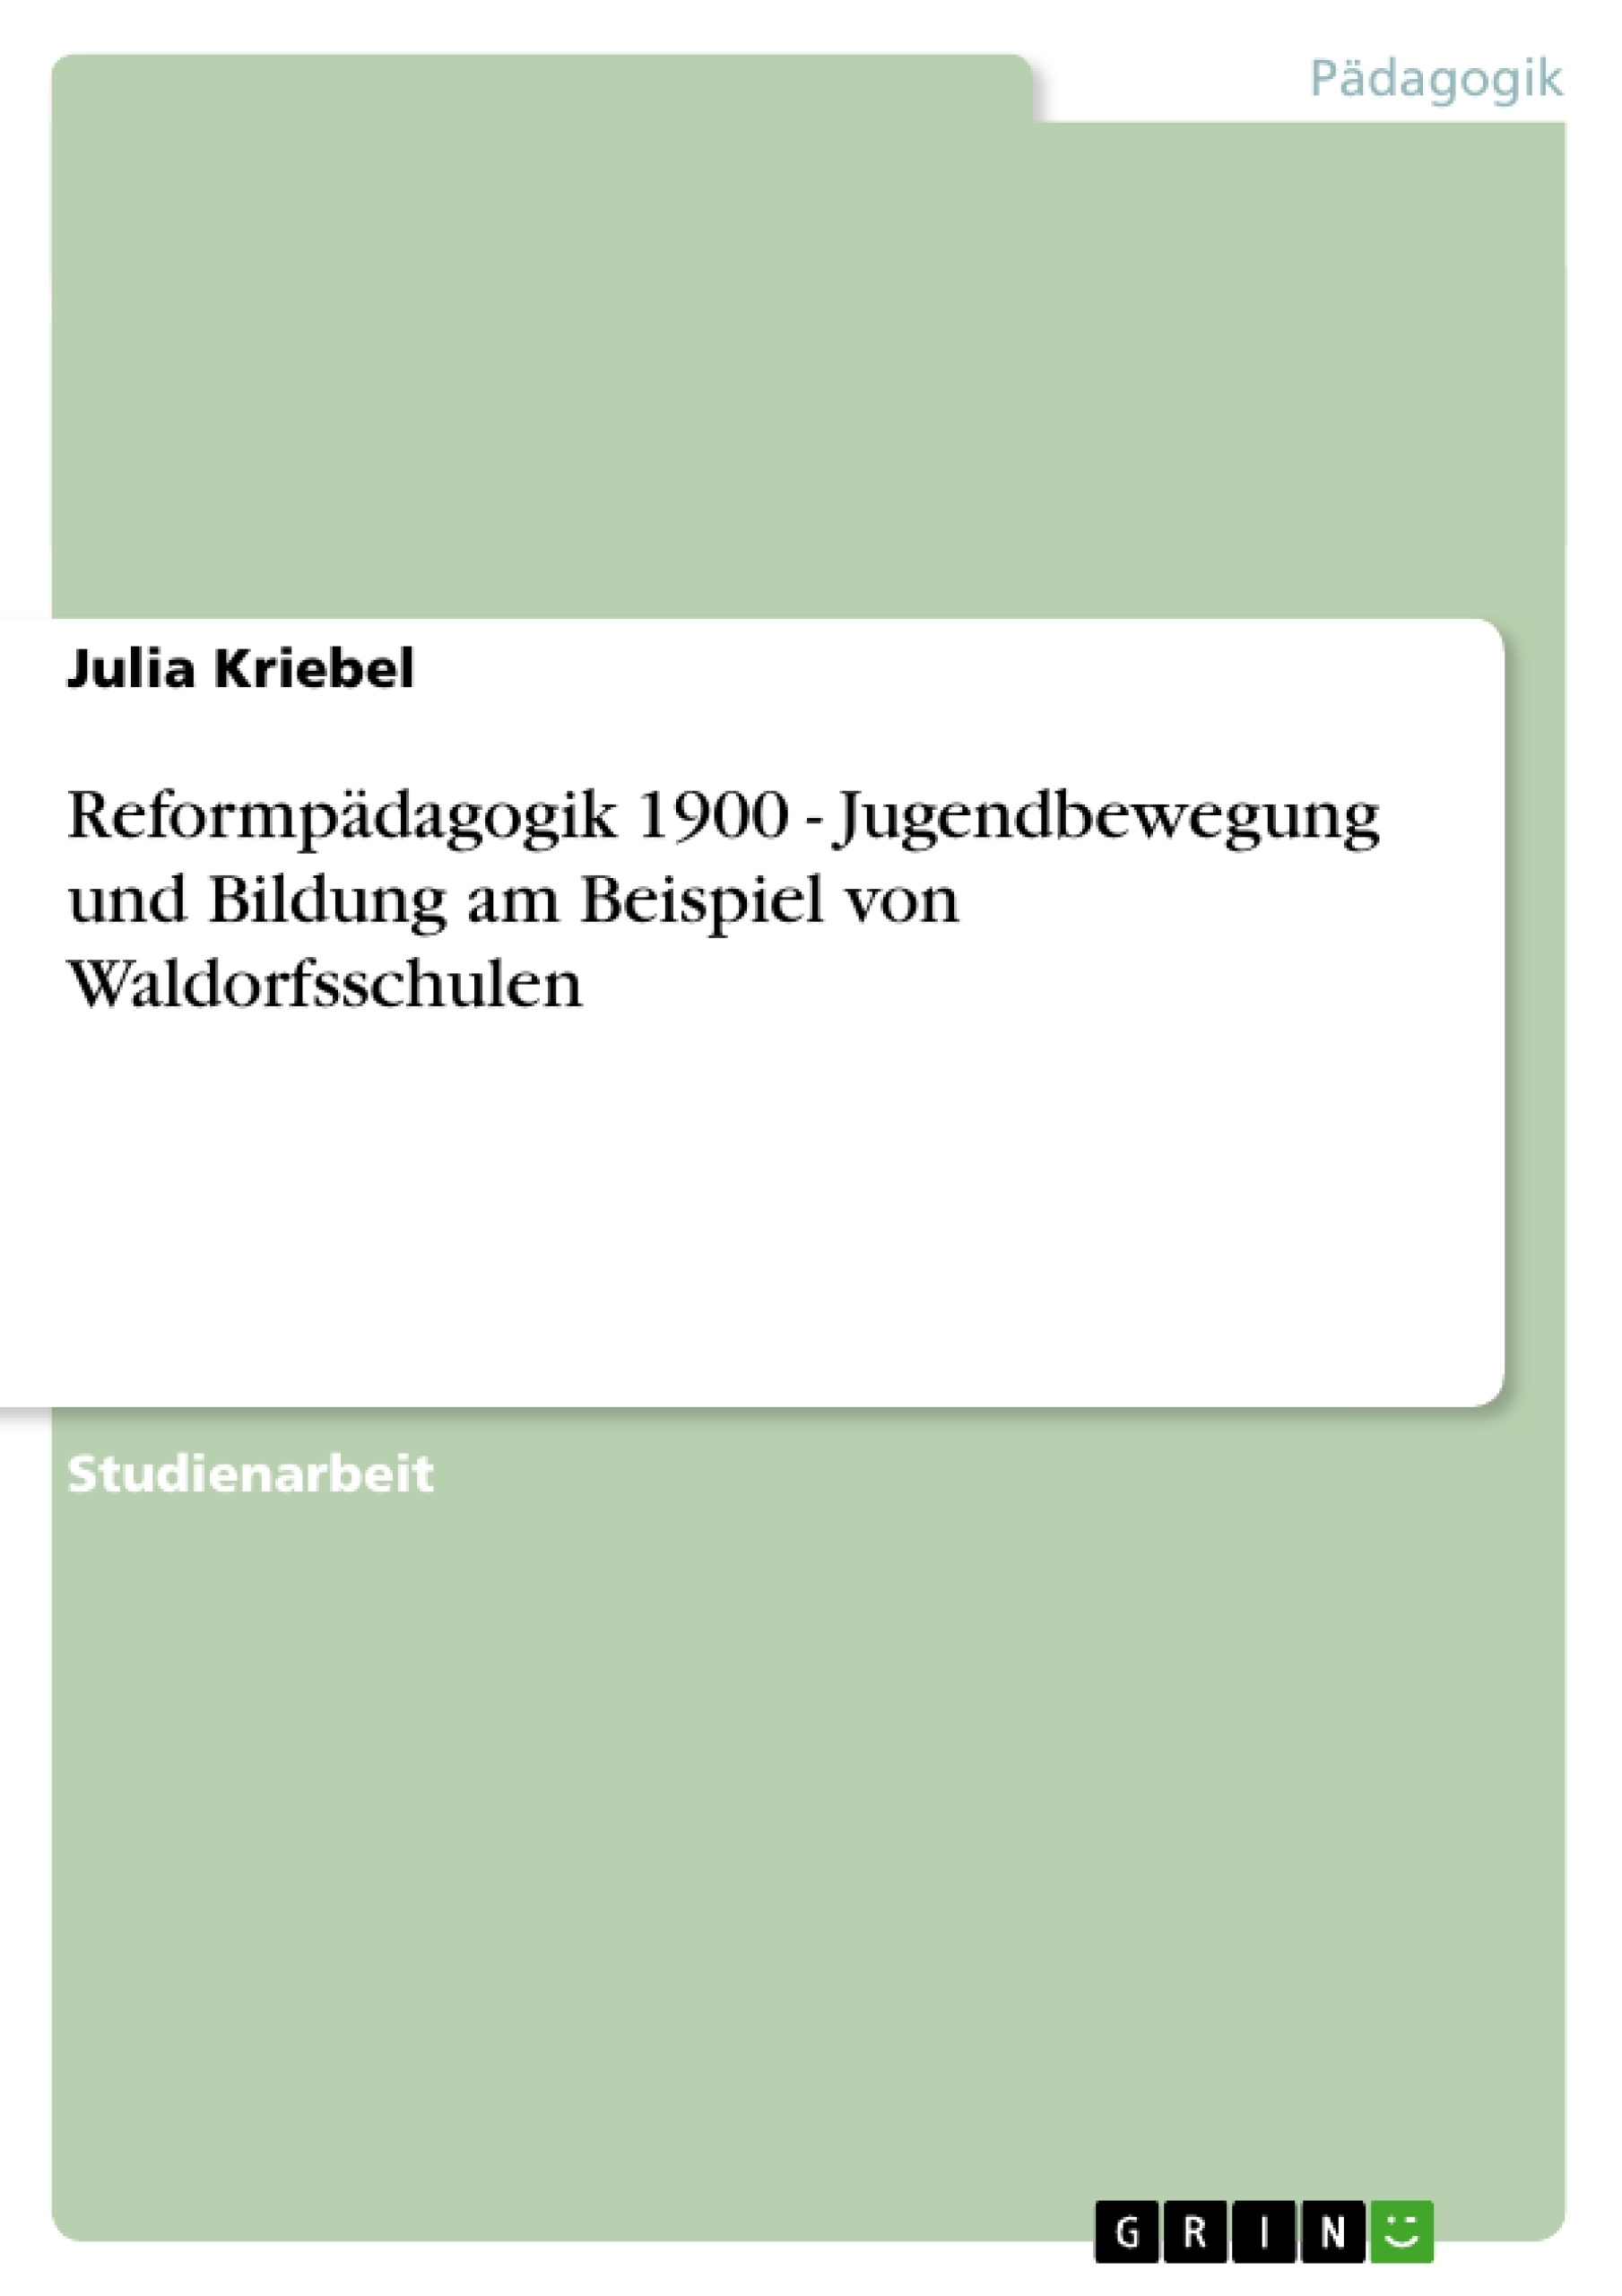 Title: Reformpädagogik 1900 - Jugendbewegung und Bildung am Beispiel von Waldorfsschulen